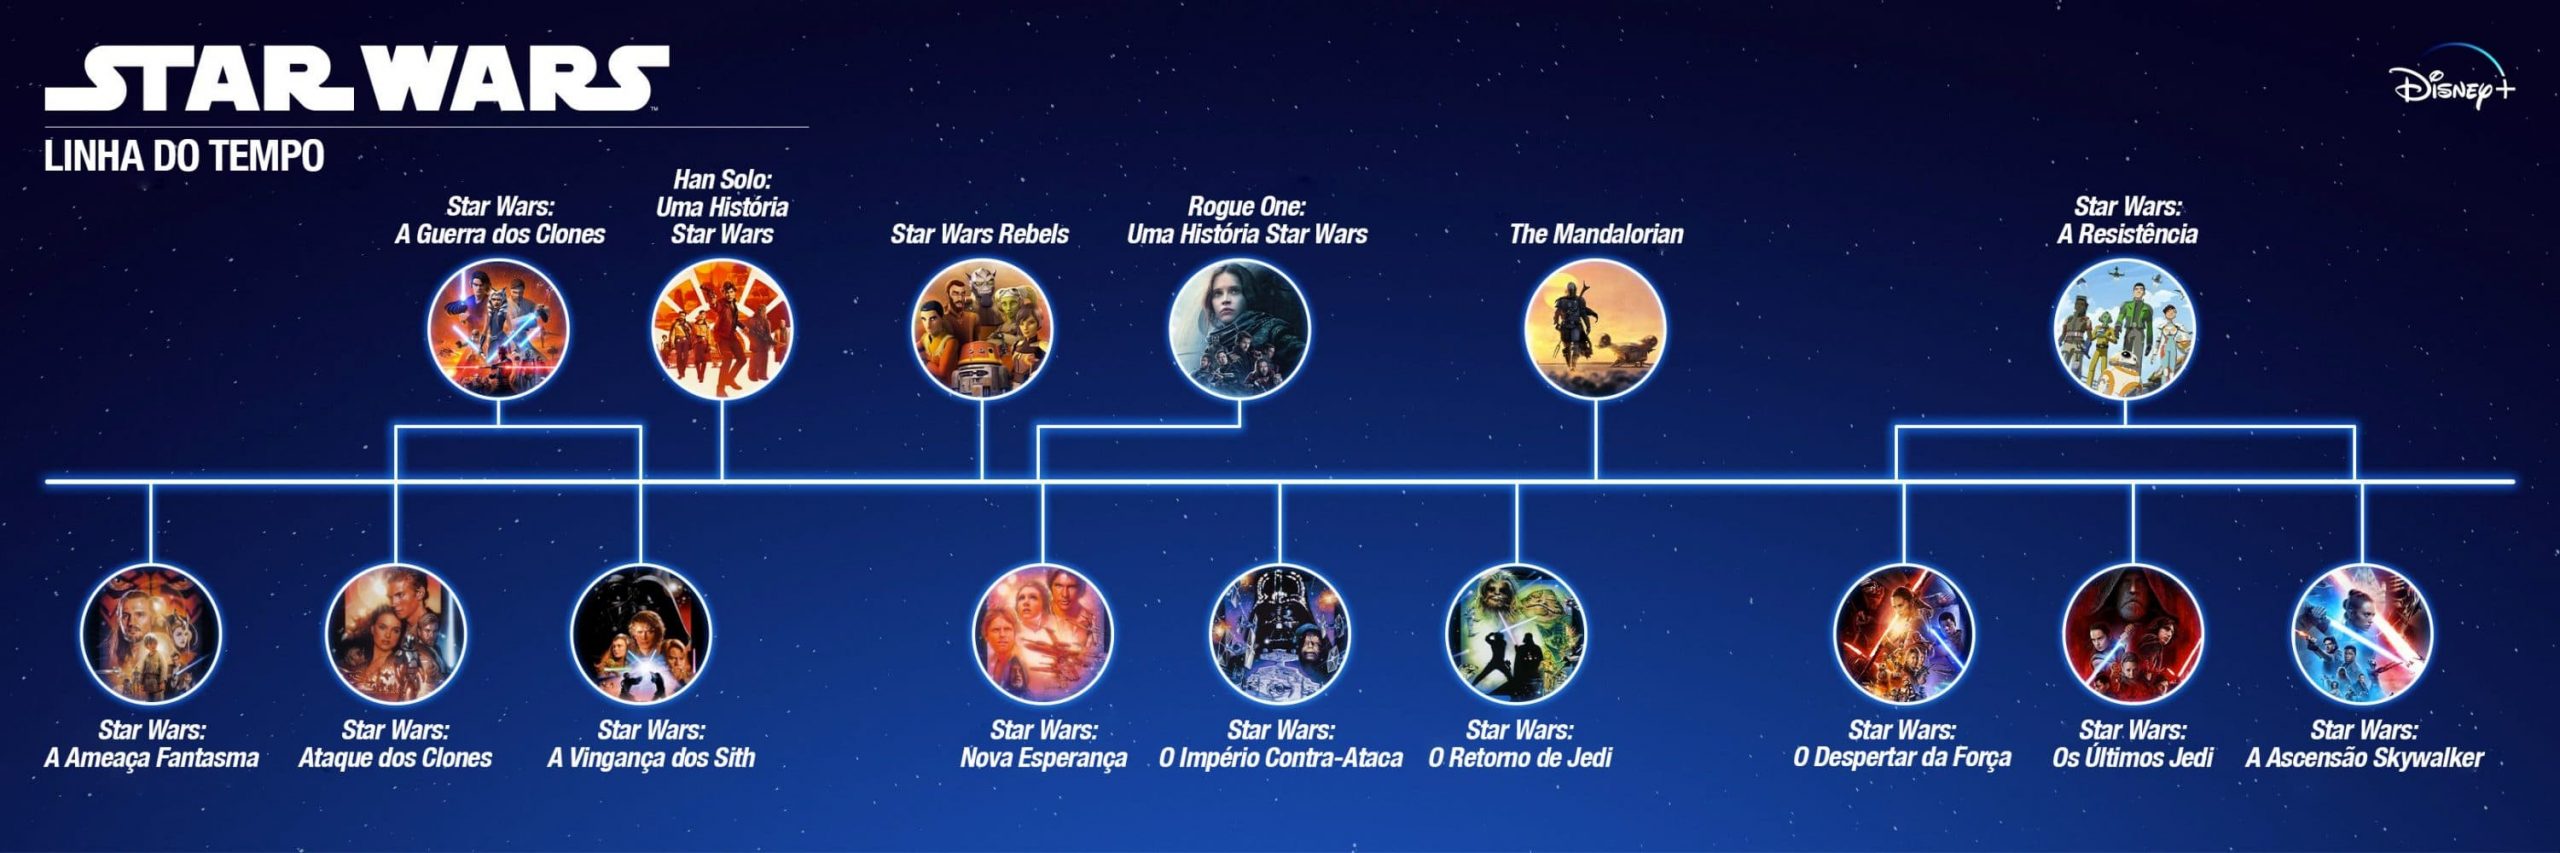 A infinita galáxia Star Wars tem uma nova série: 'Andor